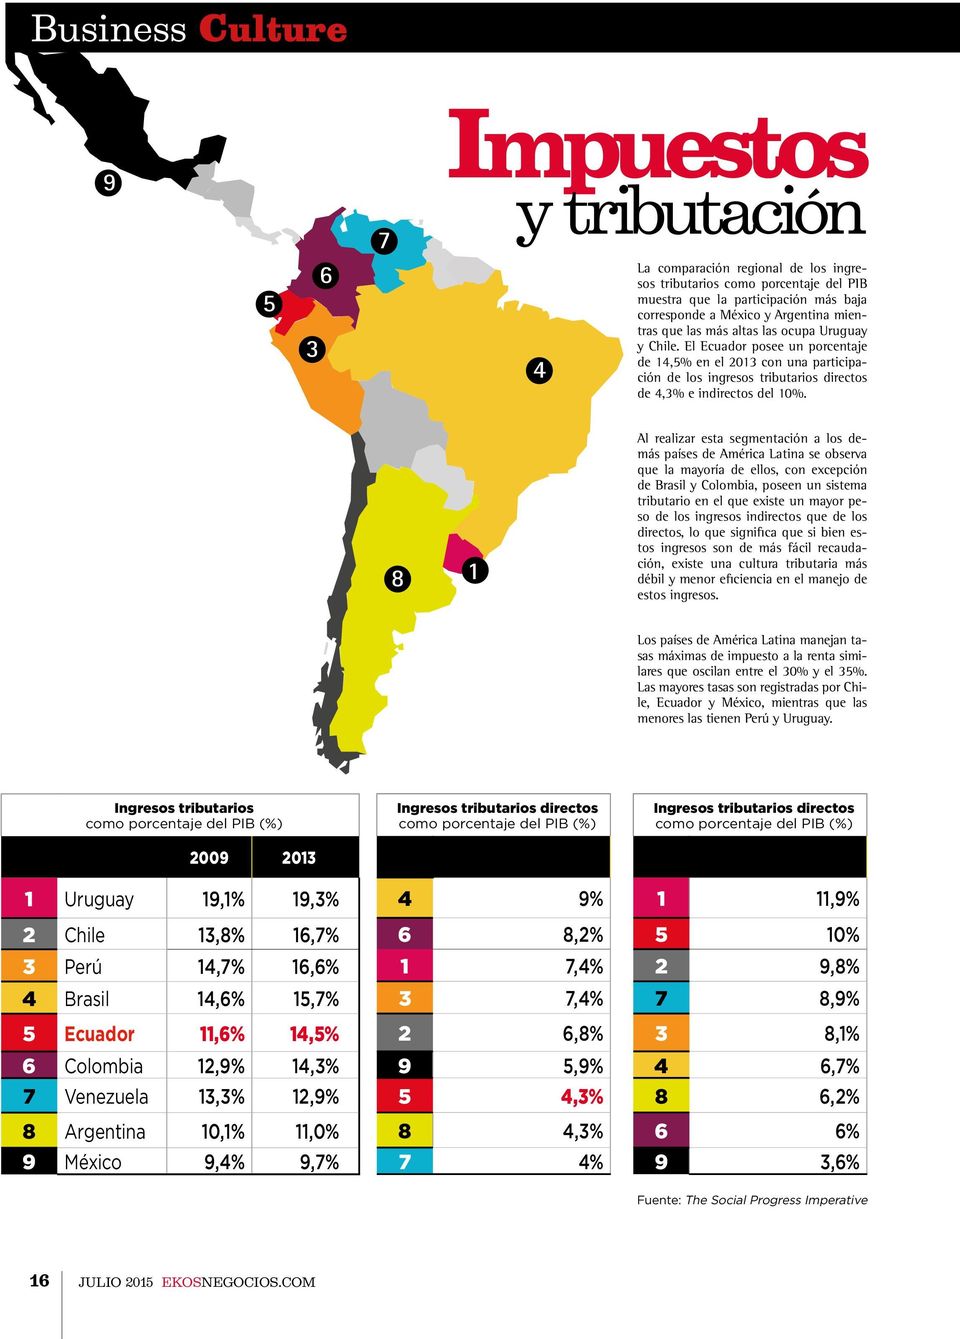 8 1 Al realizar esta segmentación a los demás países de América Latina se observa que la mayoría de ellos, con excepción de Brasil y Colombia, poseen un sistema tributario en el que existe un mayor